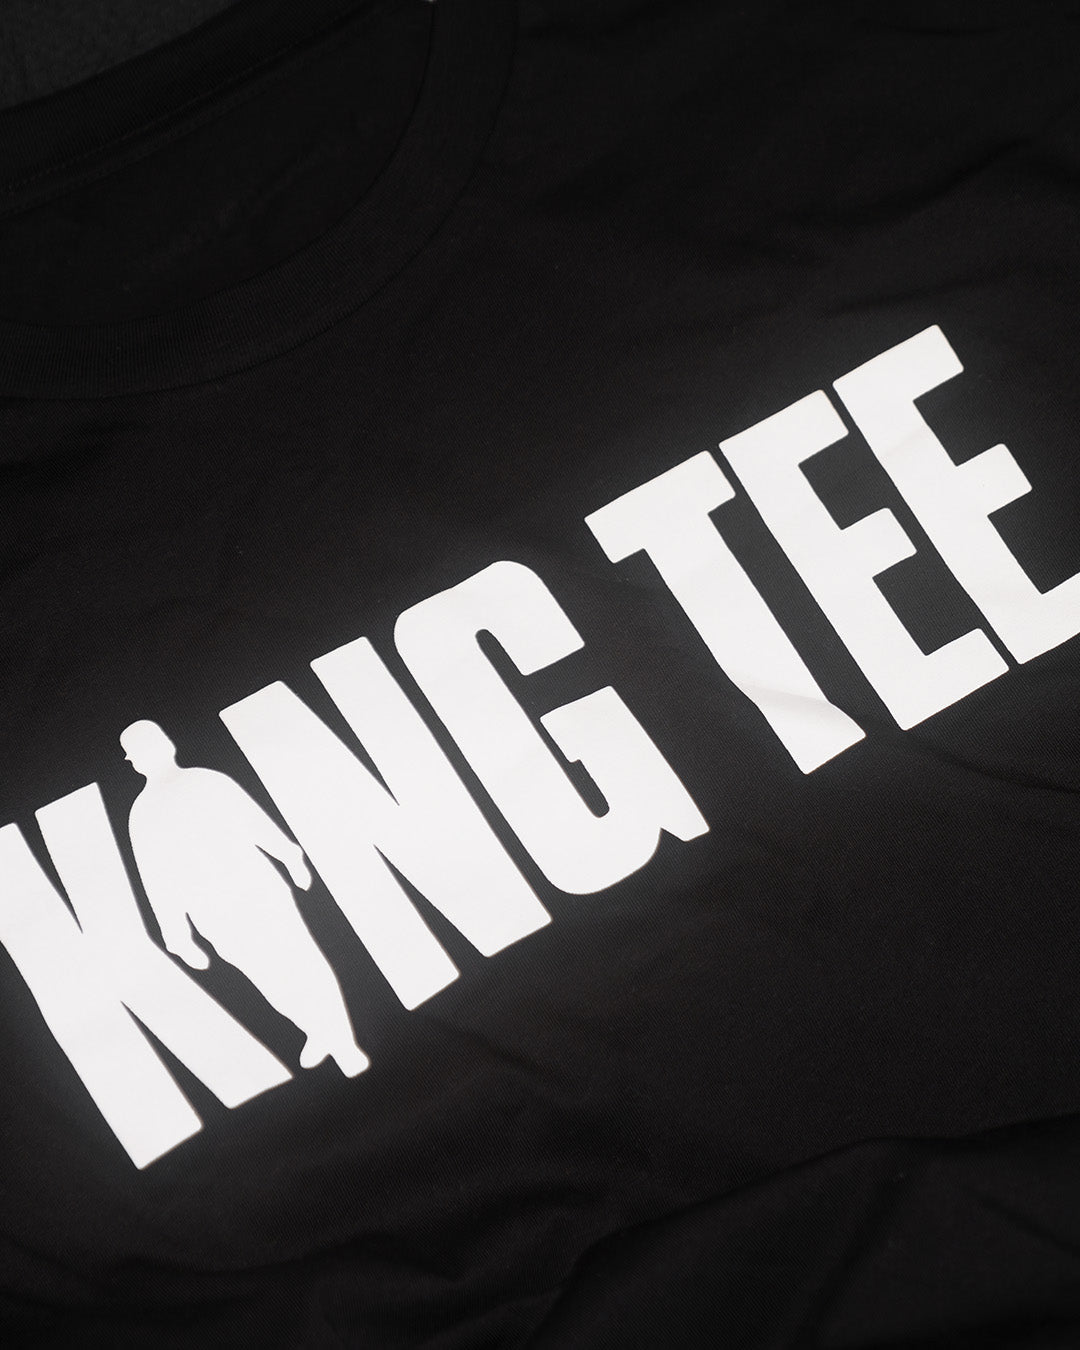 King Tee - Thy Kingdom Come (T-shirt)